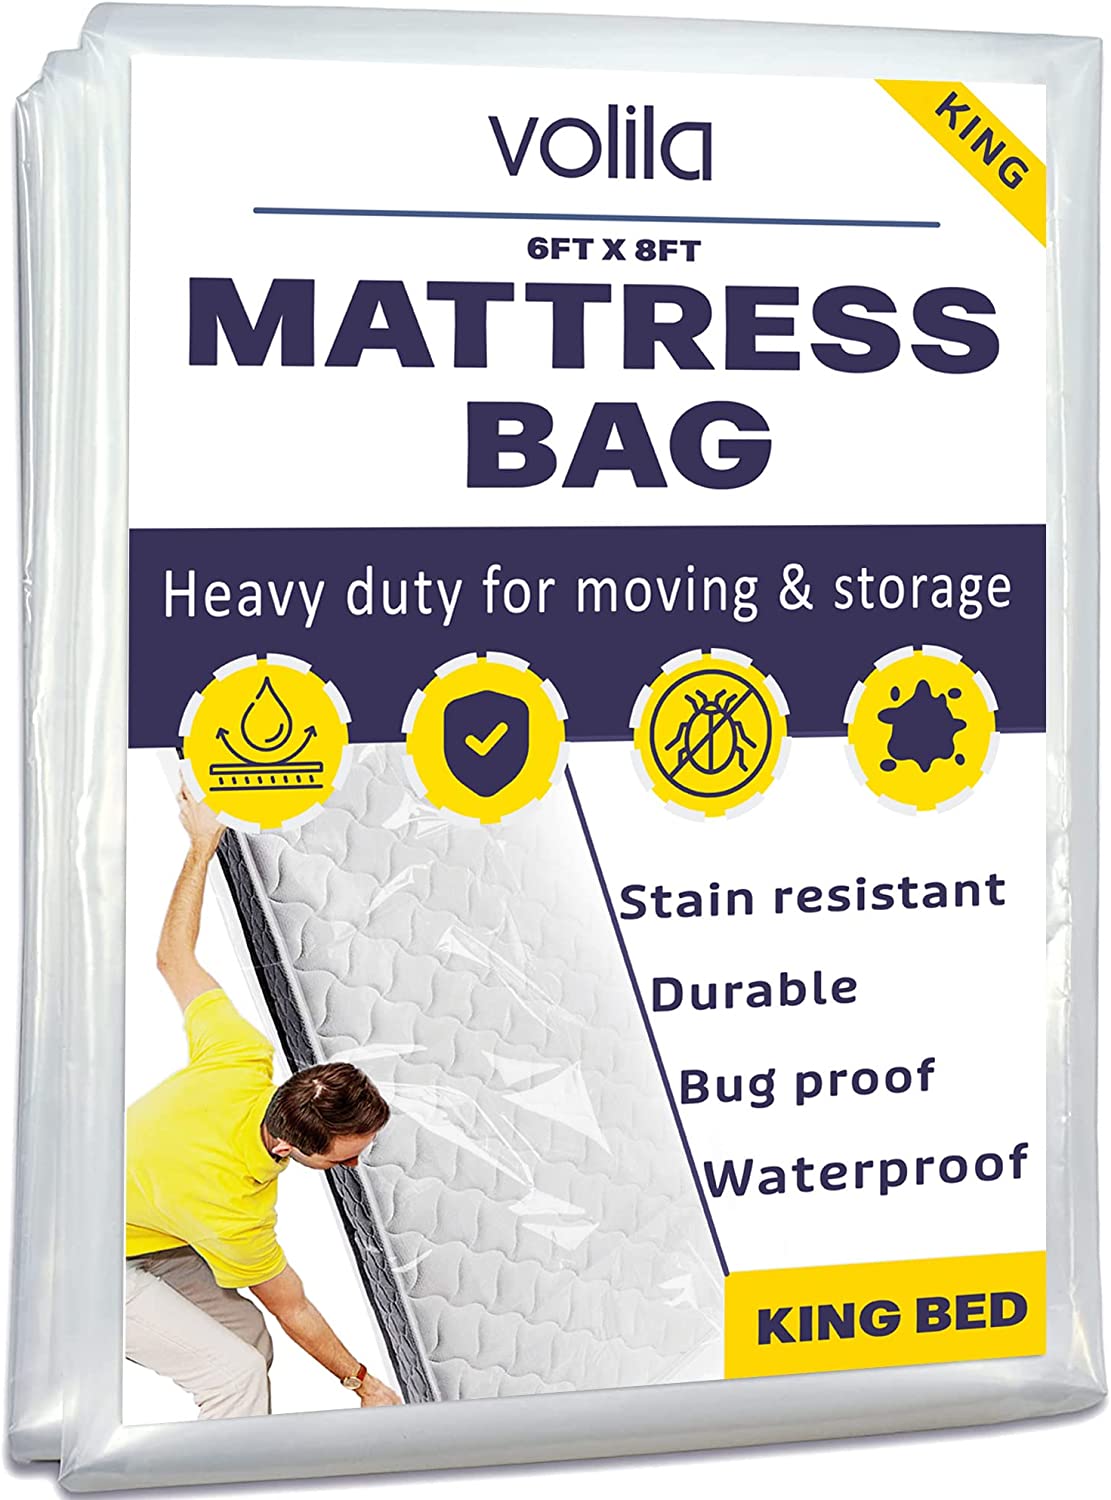 Mattress Storage King Main Image